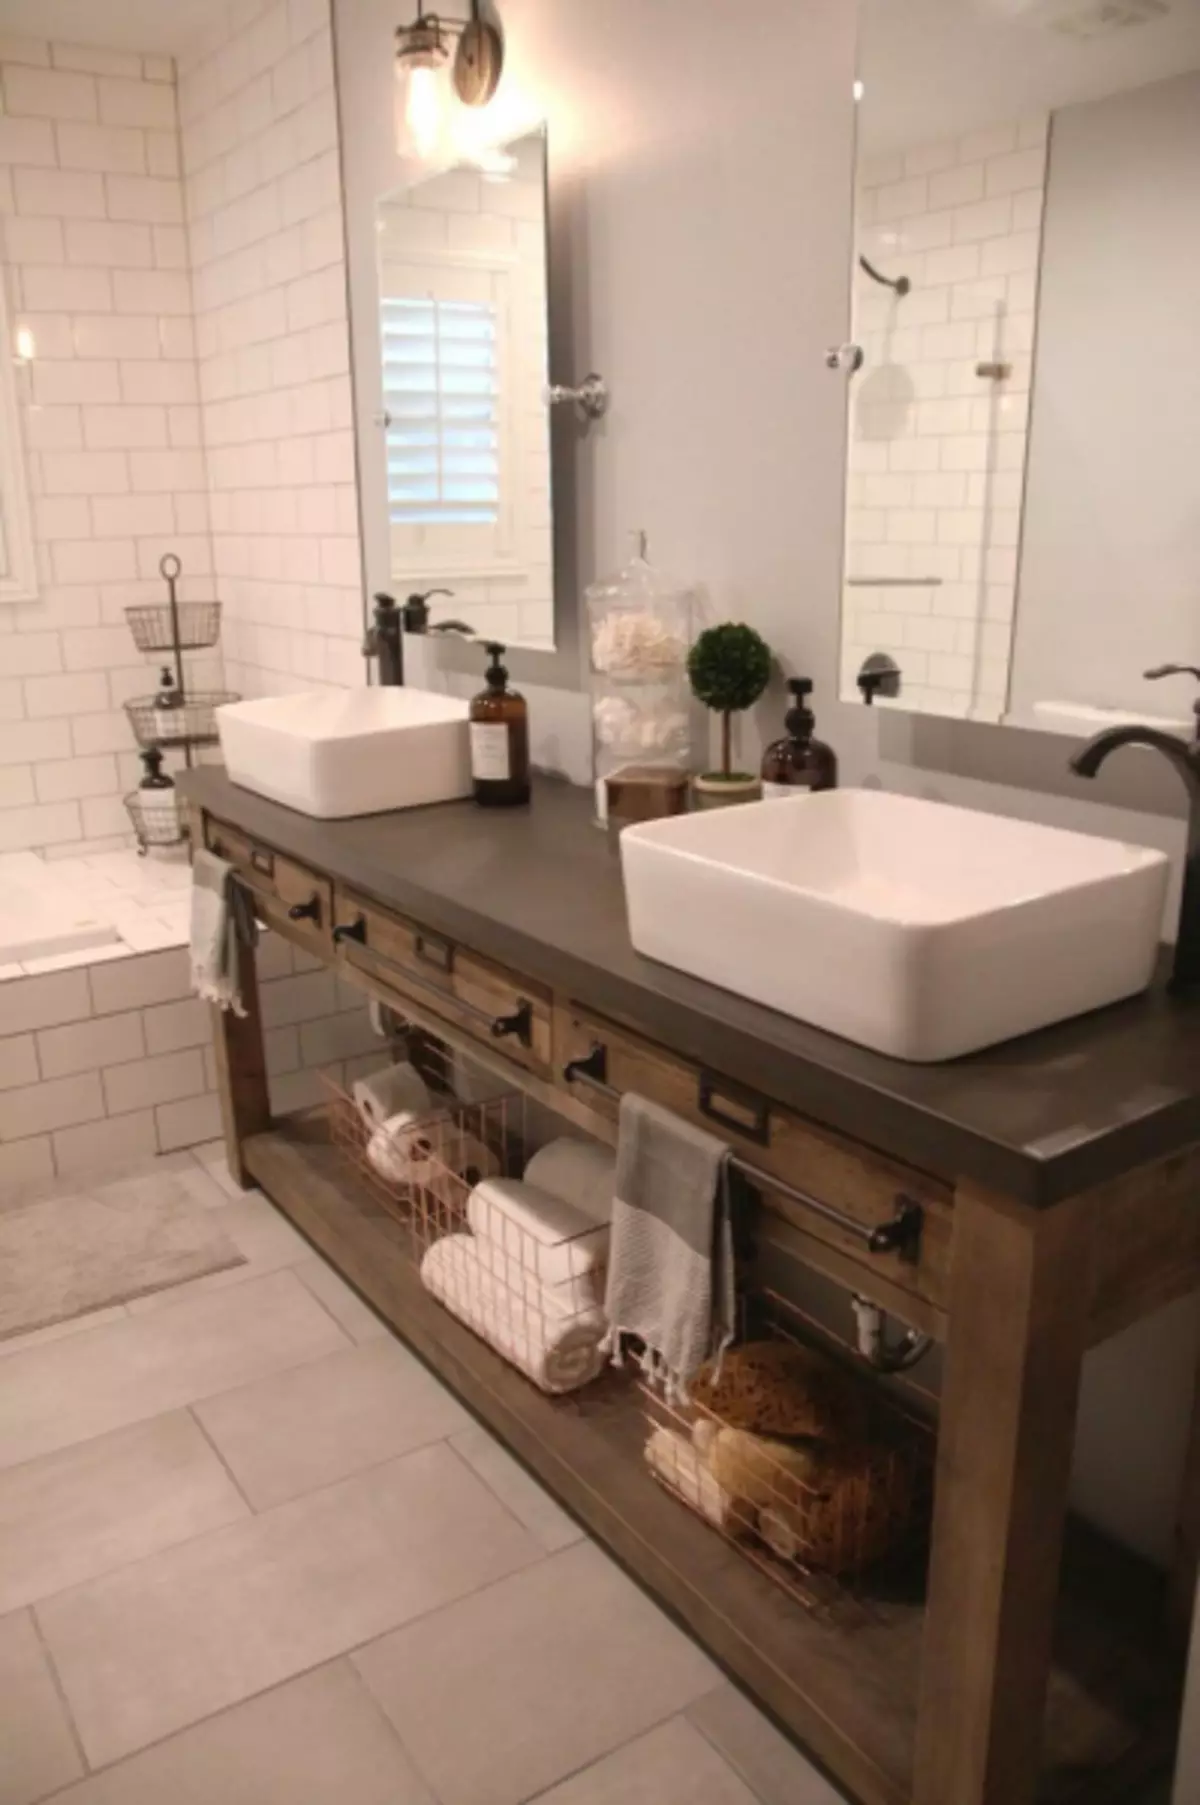 Ариун цэврийн угаах угаалгын өрөө - каталогоос хамгийн сайн шинэ бүтээгдэхүүний 105 зураг